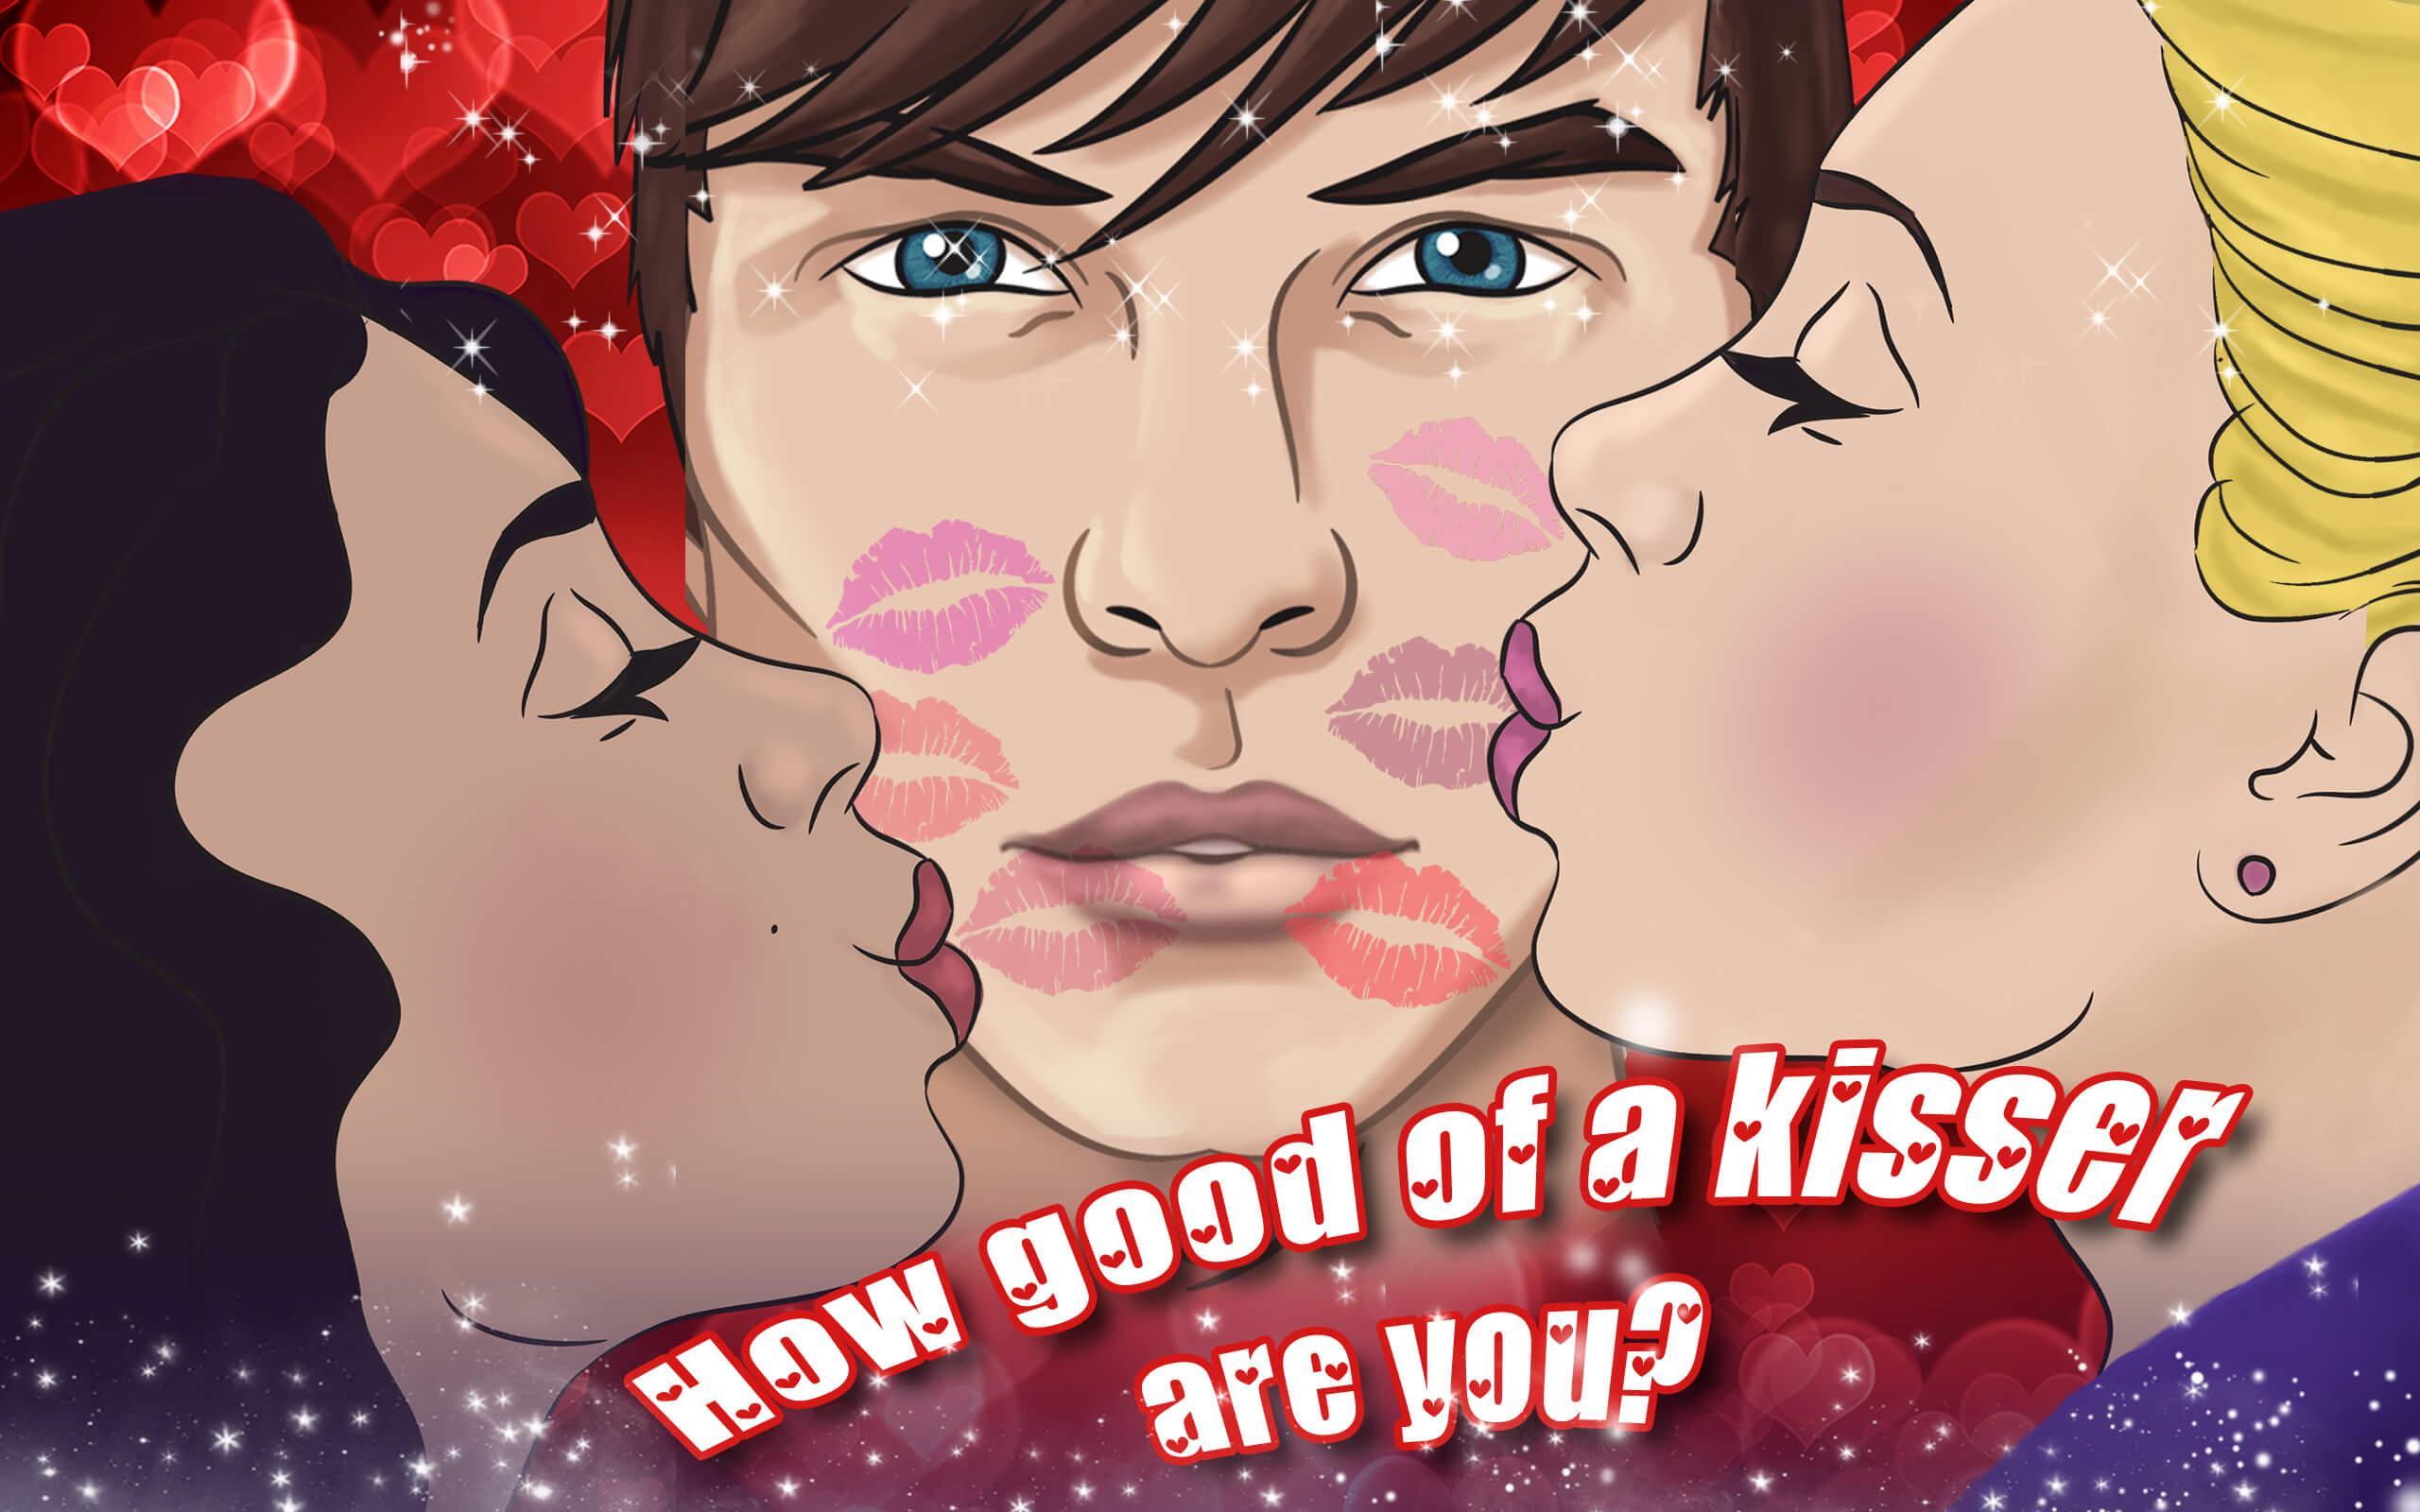 Игра поцелуй мужчин. Игра поцелуйчики. Игры поцелуи - поцелуйчики. Игра романтический поцелуй. На игре поцеловались.